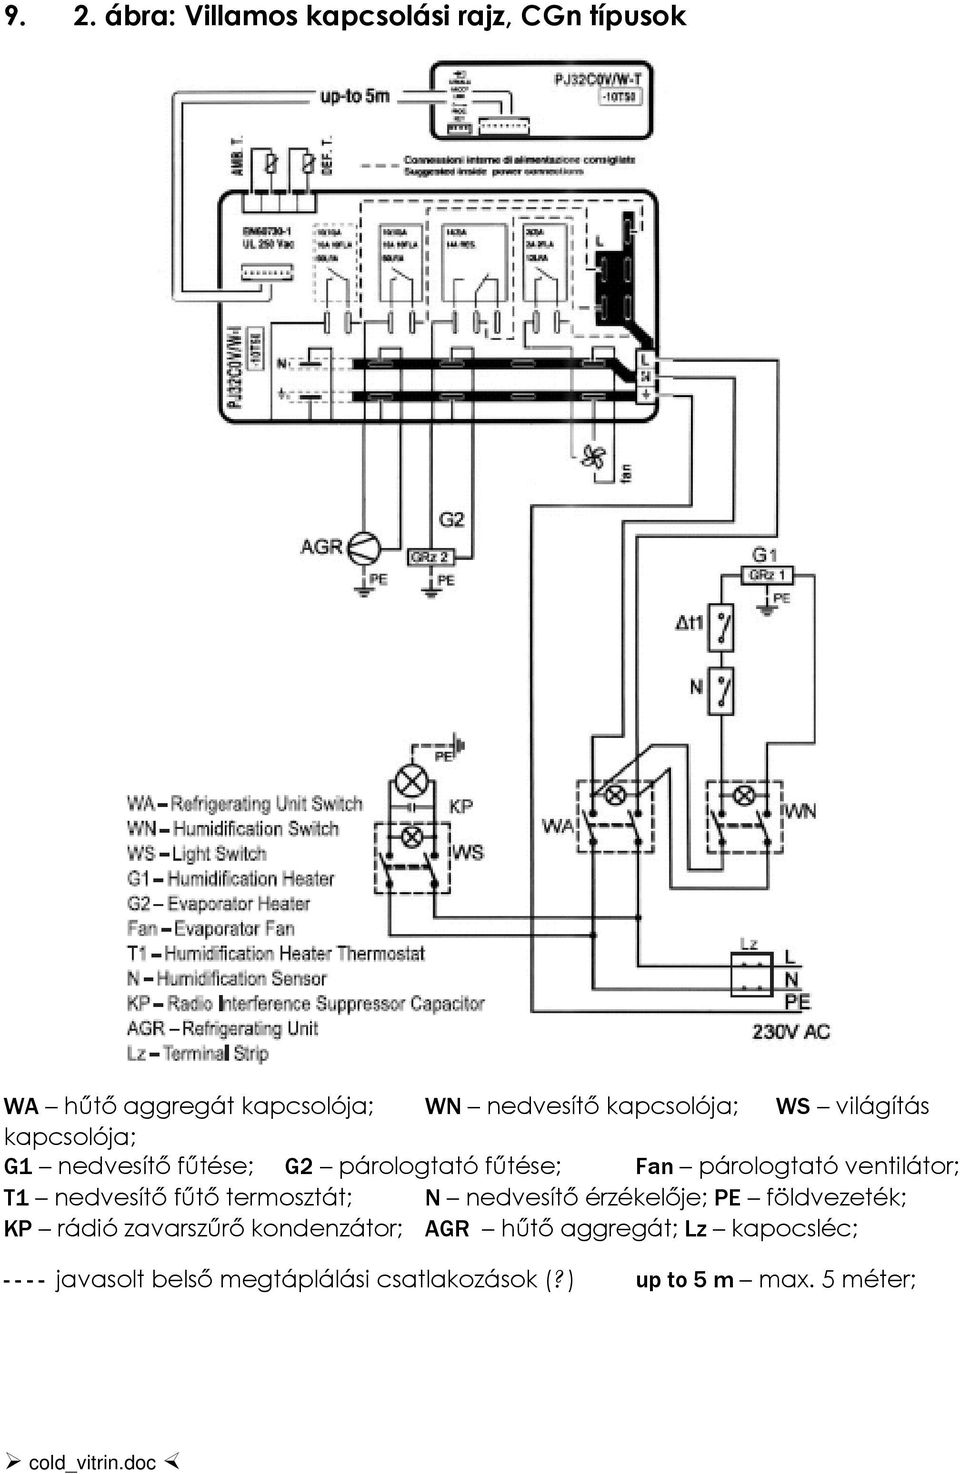 nedvesítő fűtő termosztát; N nedvesítő érzékelője; PE földvezeték; KP rádió zavarszűrő kondenzátor; AGR